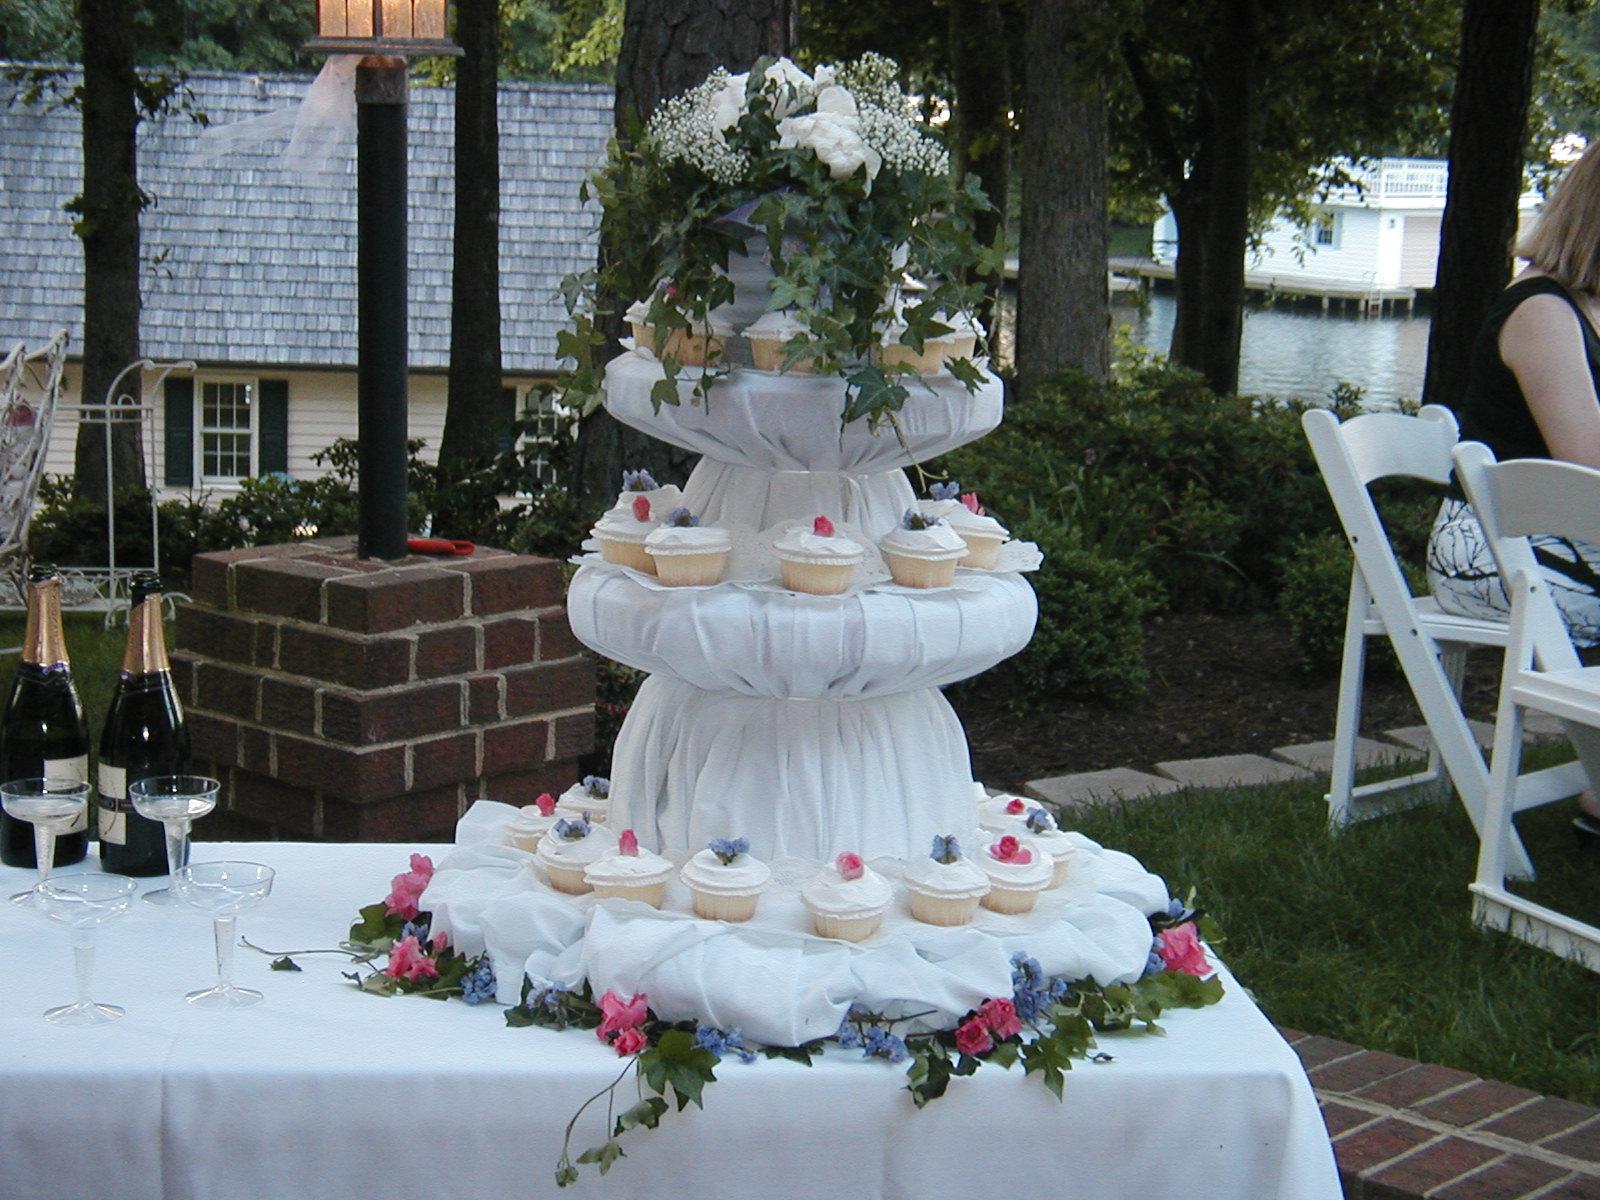 Wedding cupcake display for